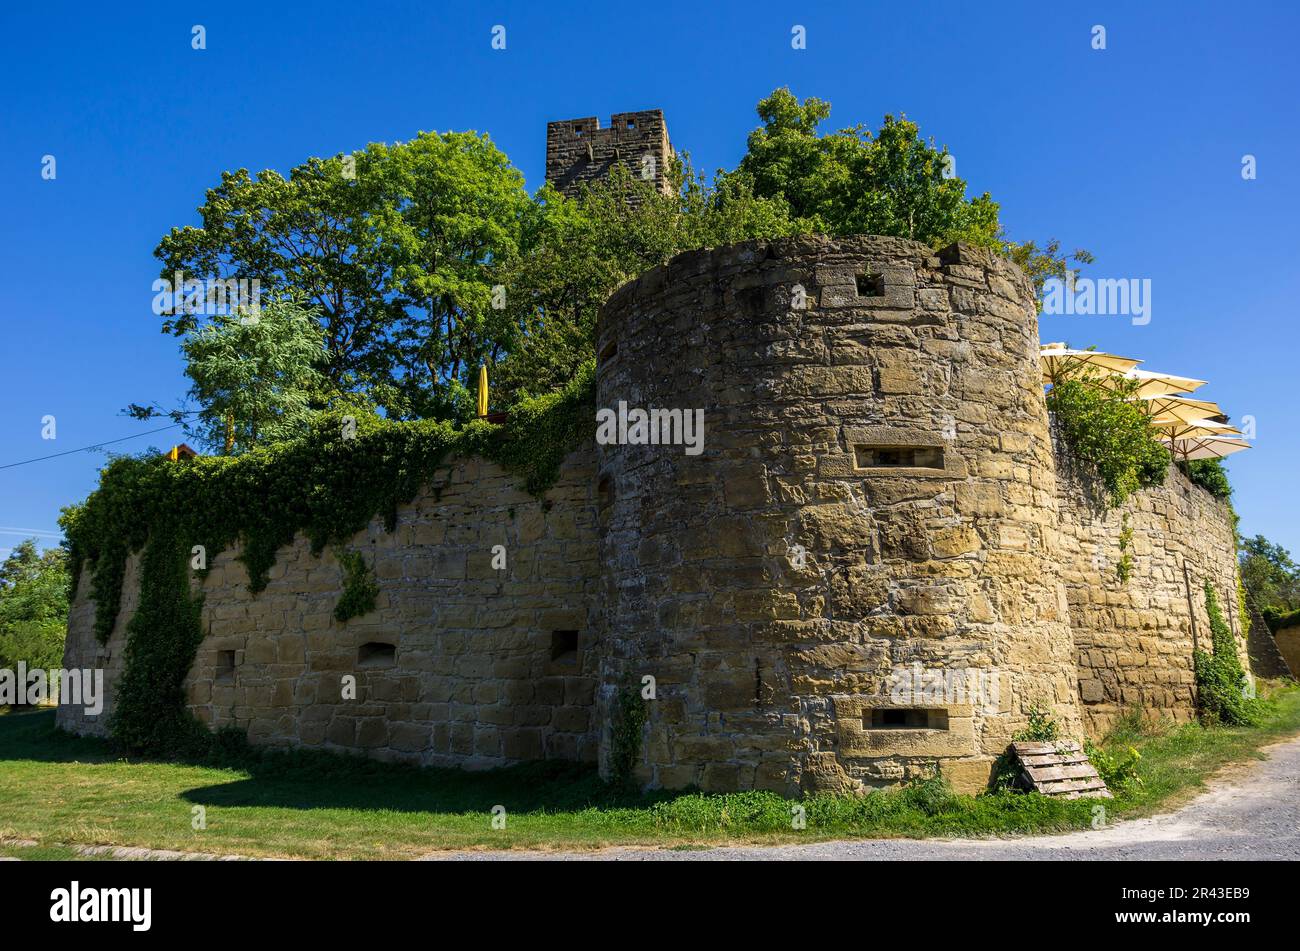 Vue extérieure du château de Ravensburg à Kraichgau près de Sulzfeld, région de Heilbronn, Bade-Wurtemberg, Allemagne. Banque D'Images